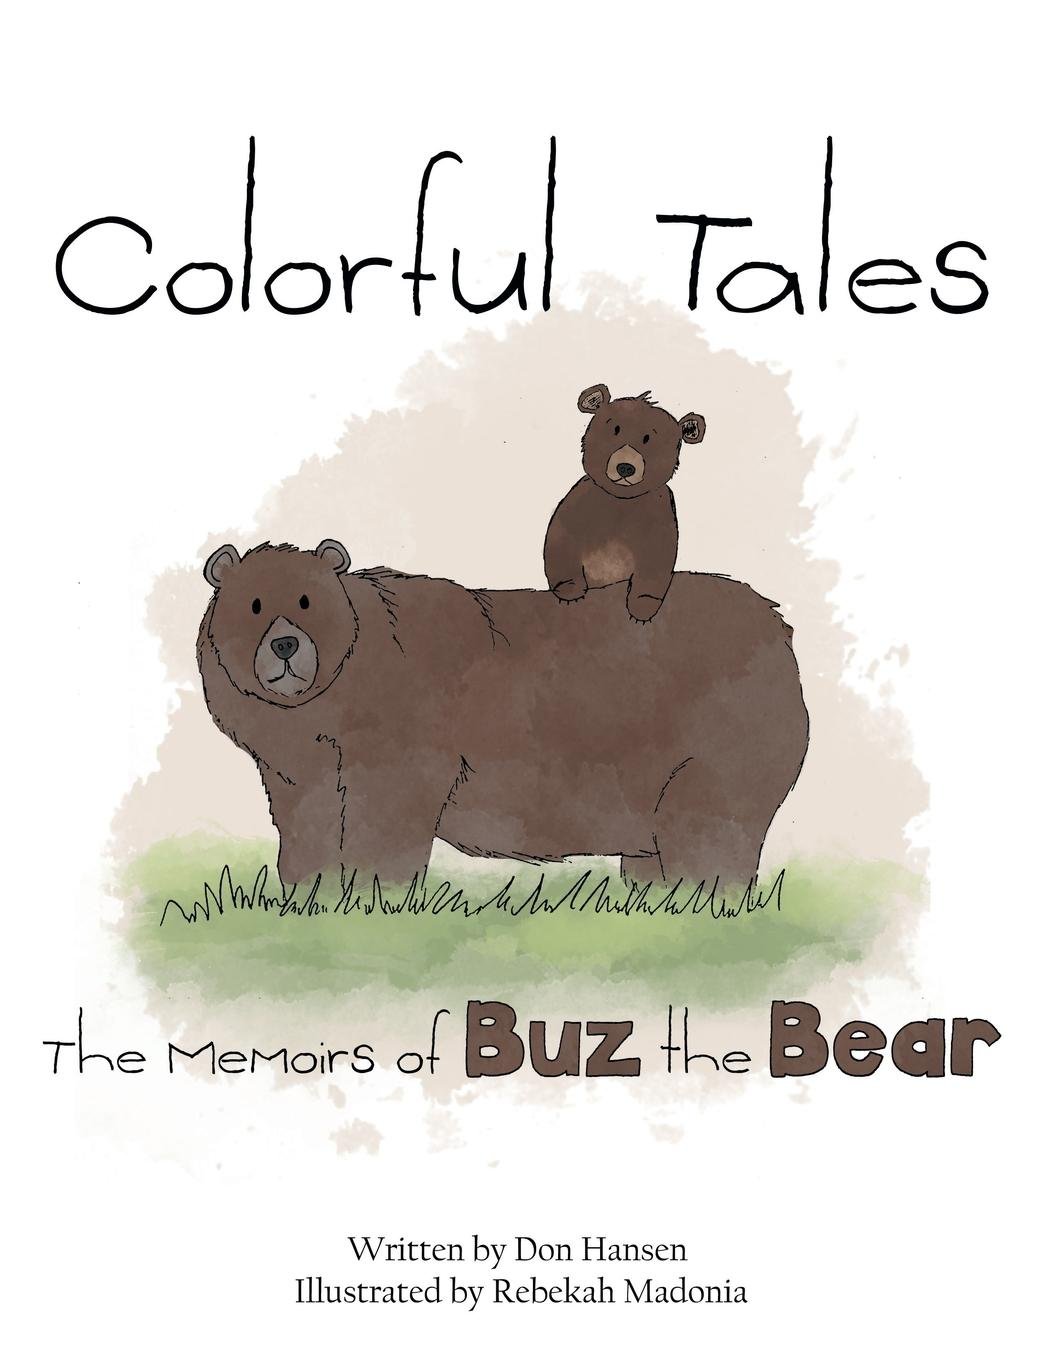 Memoirs of Buz the Bear